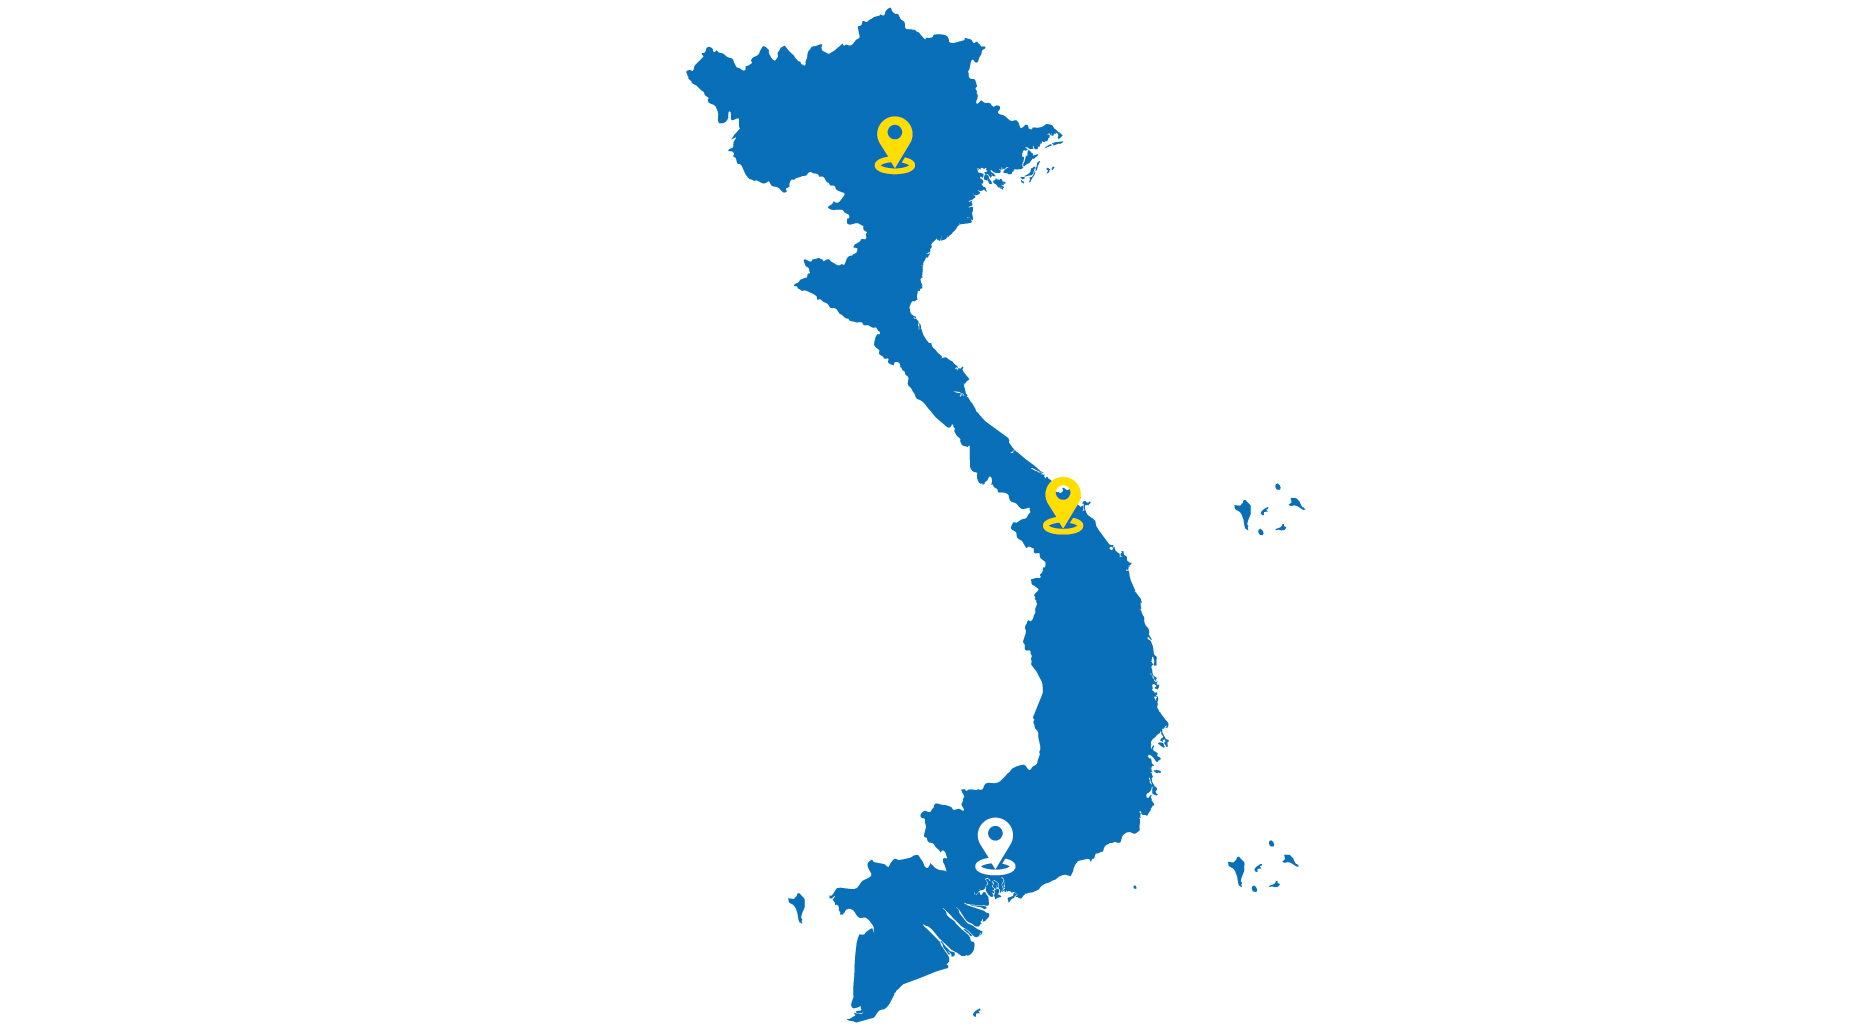 Mở rộng thị trường xuống khu vực phía Nam, thành lập Văn phòng TP. Hồ Chí Minh, đánh dấu GamaLift có mặt cả 3 miền Bắc - Trung - Nam.